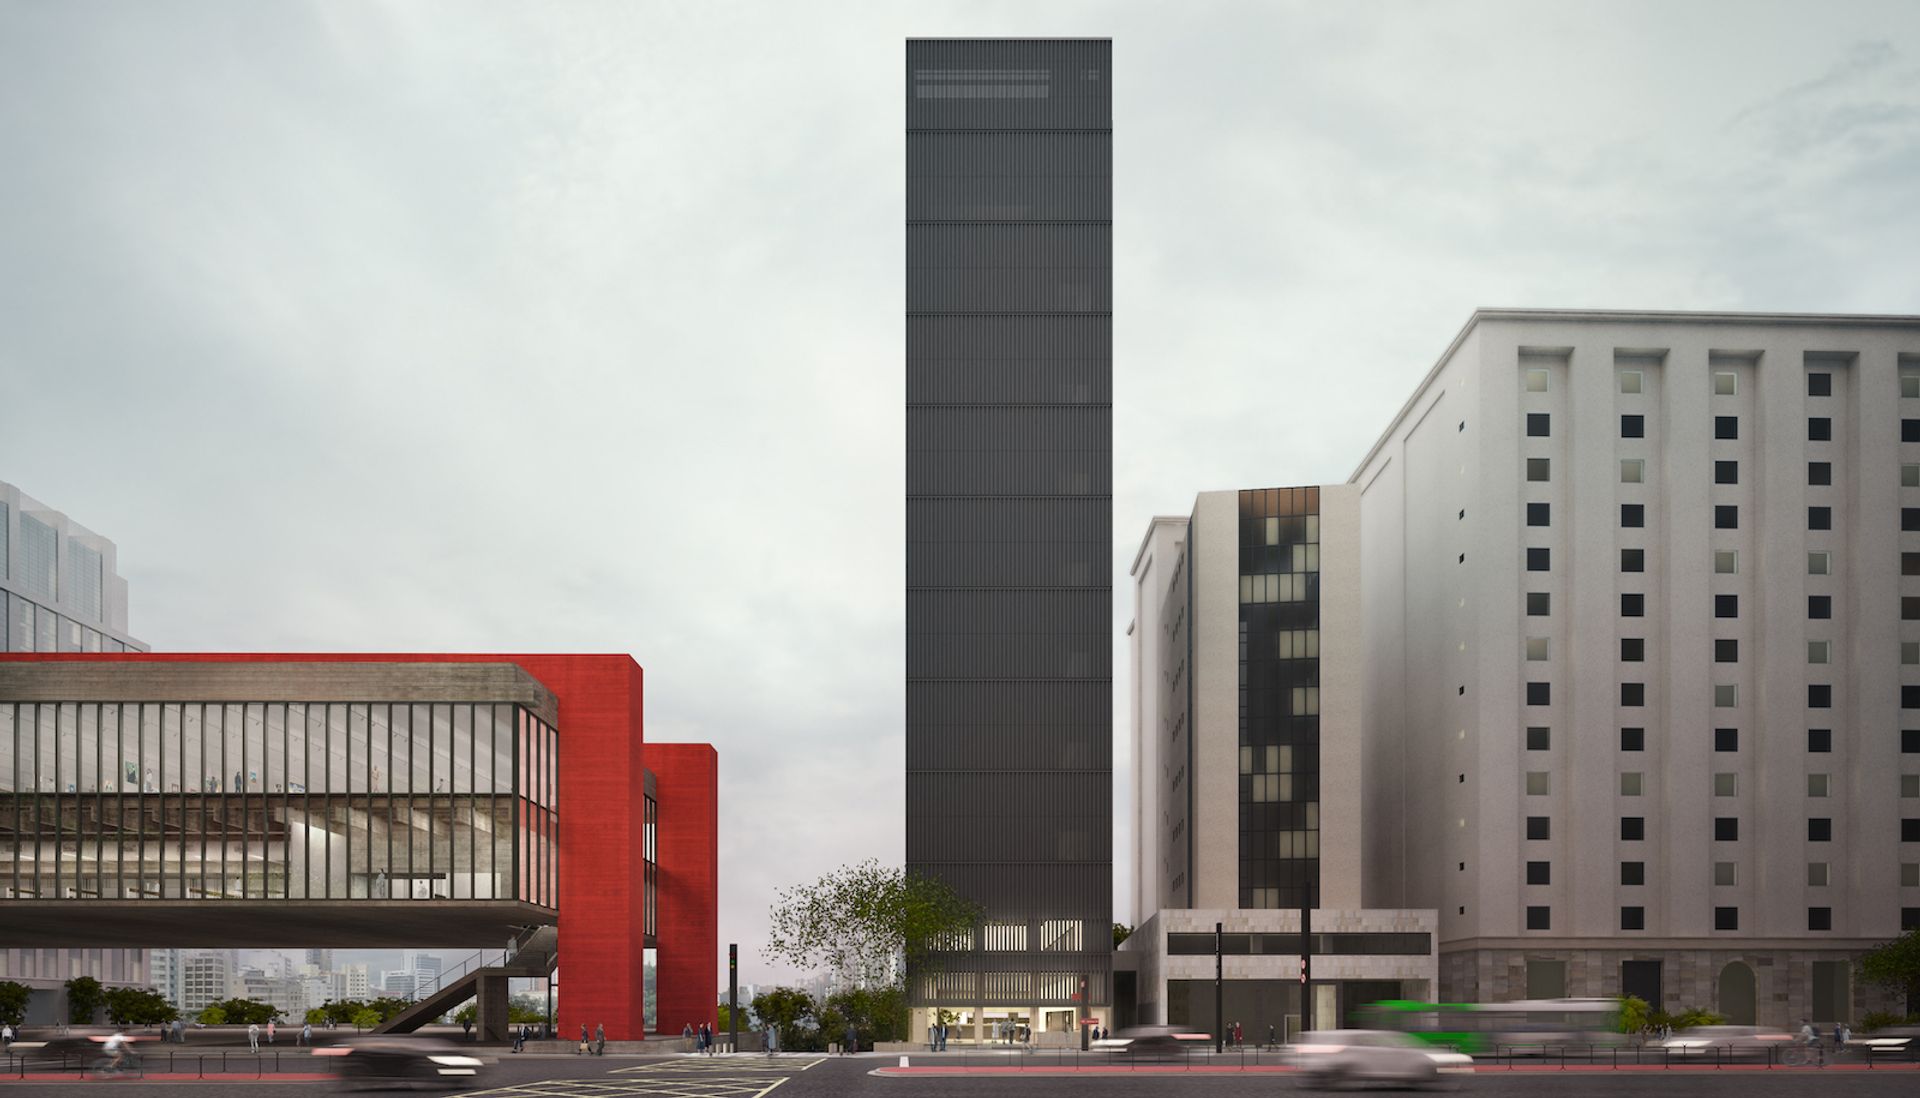 The Museu de Arte de São Paulo Assis Chateaubriand expects to unveil its new 14-floor building in 2024 Rendering courtesy Museu de Arte de São Paulo Assis Chateaubriand